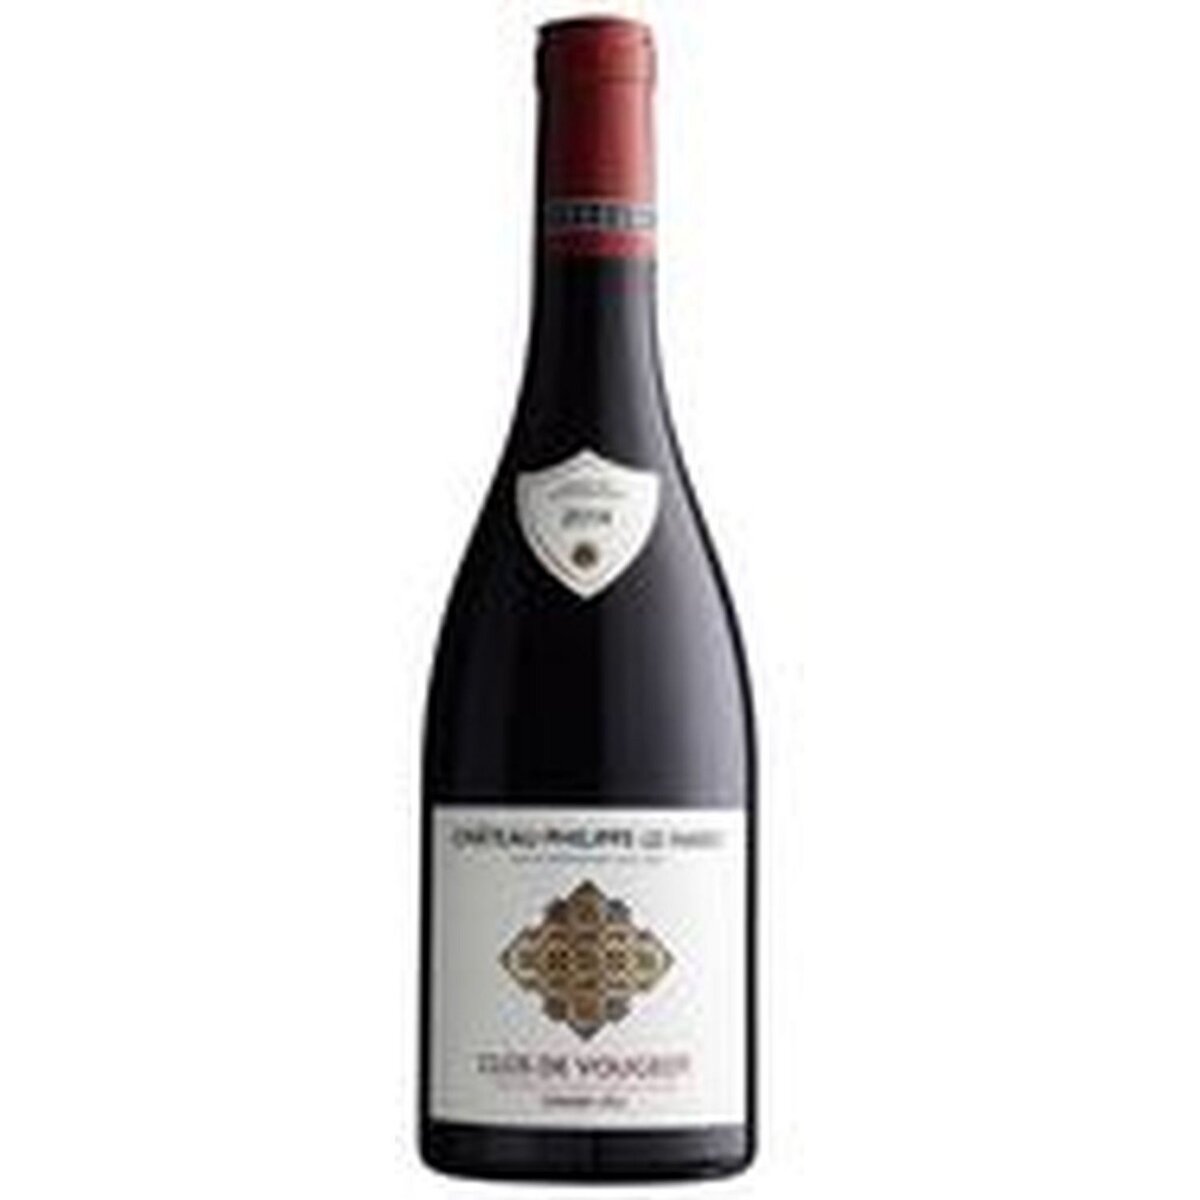 Vin rouge AOP Beaune Clos de Vougeot G. Cru Château Philippe Le Hardi 2014 75cl